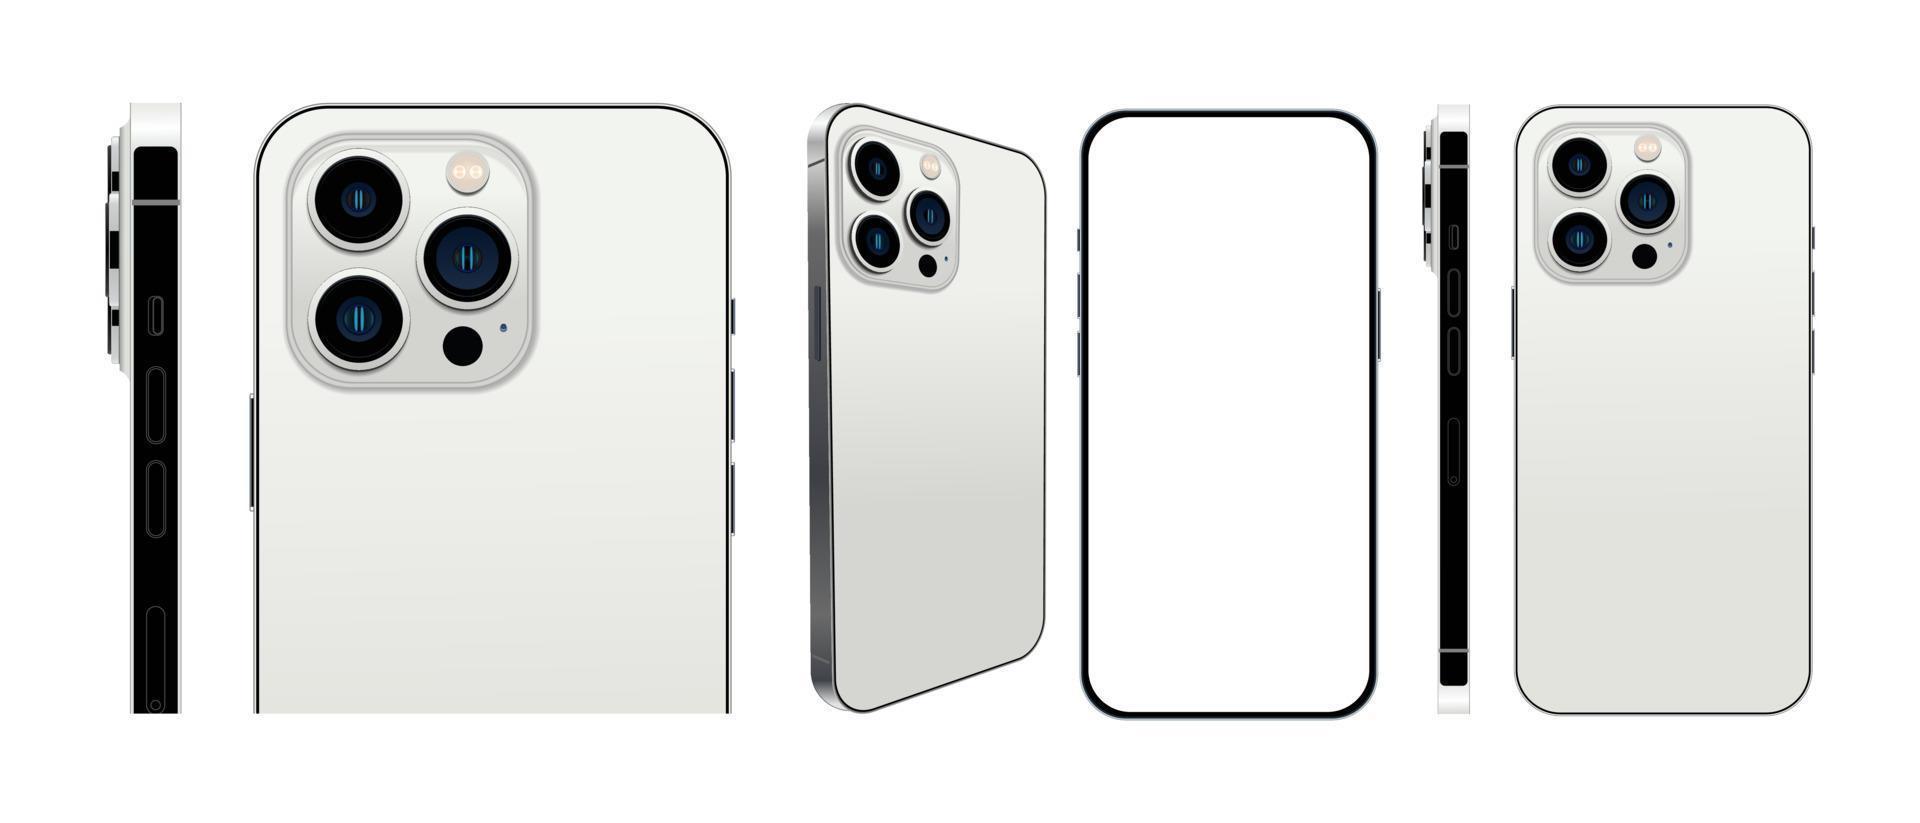 realistisk uppsättning smartphone silver färg layouter isolerad på en vit bakgrund. vektor illustration